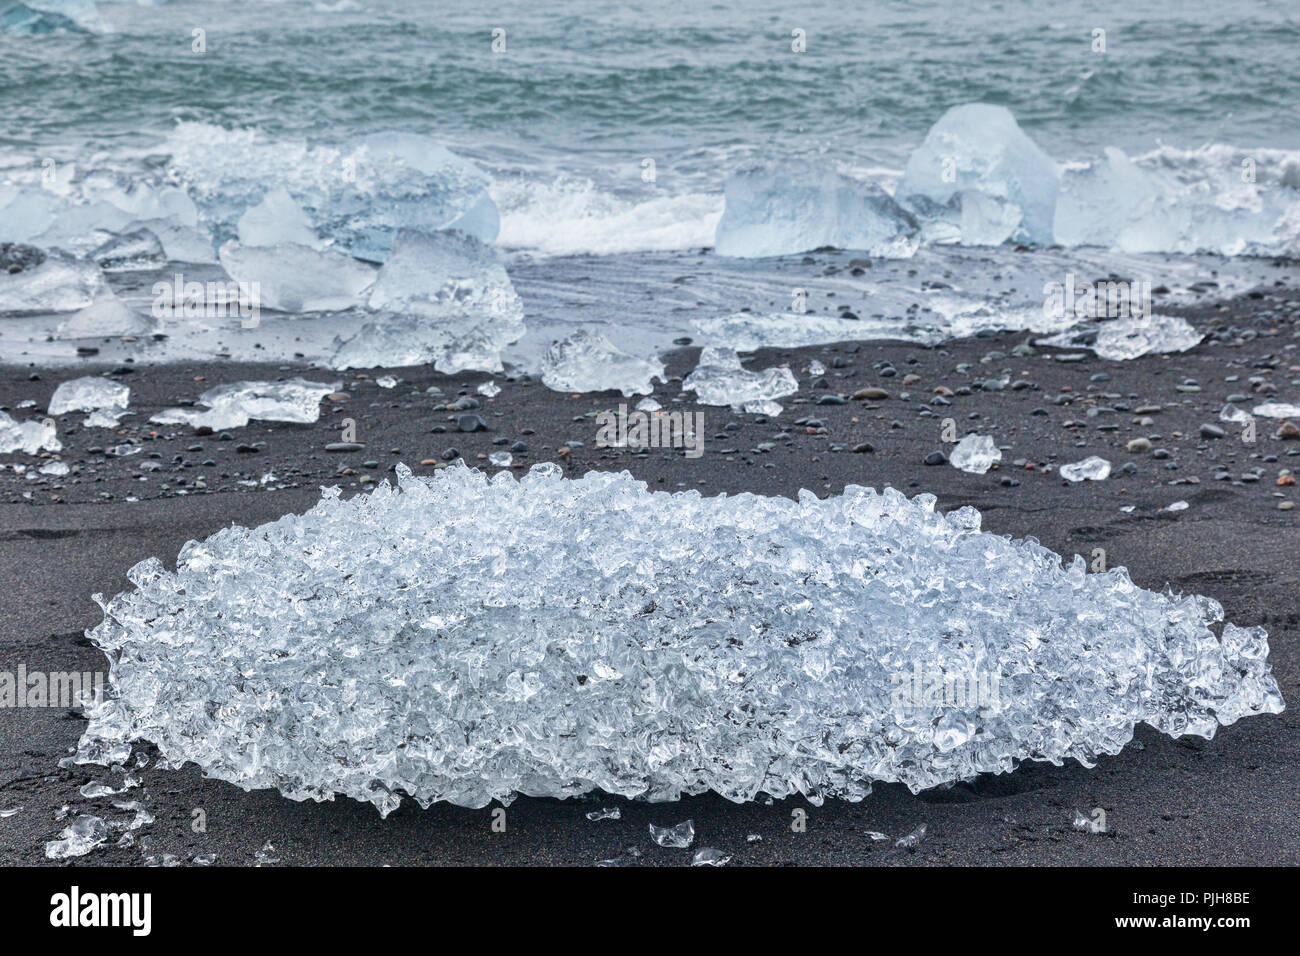 La glace sur la plage du Diamant, le sud de l'Islande, où la glace de Jokulsarlon Glacial Lagoon est déposé sur le sable noir volcanique. Banque D'Images